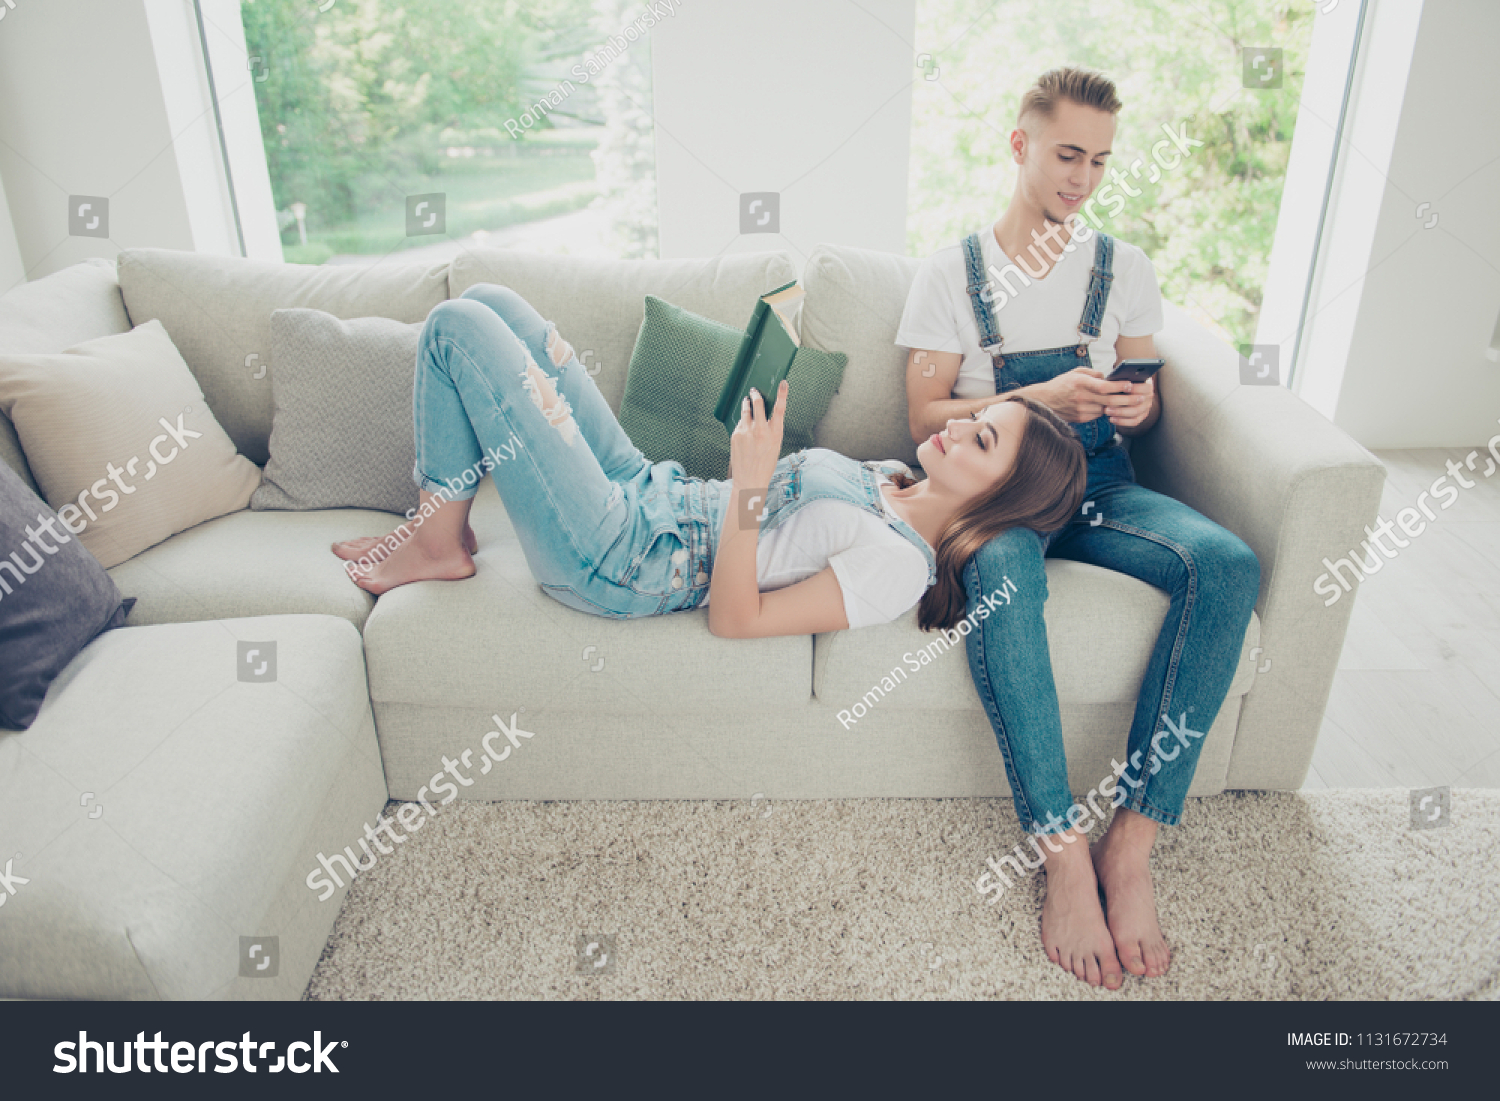 Девушка с парнем на диване босиком